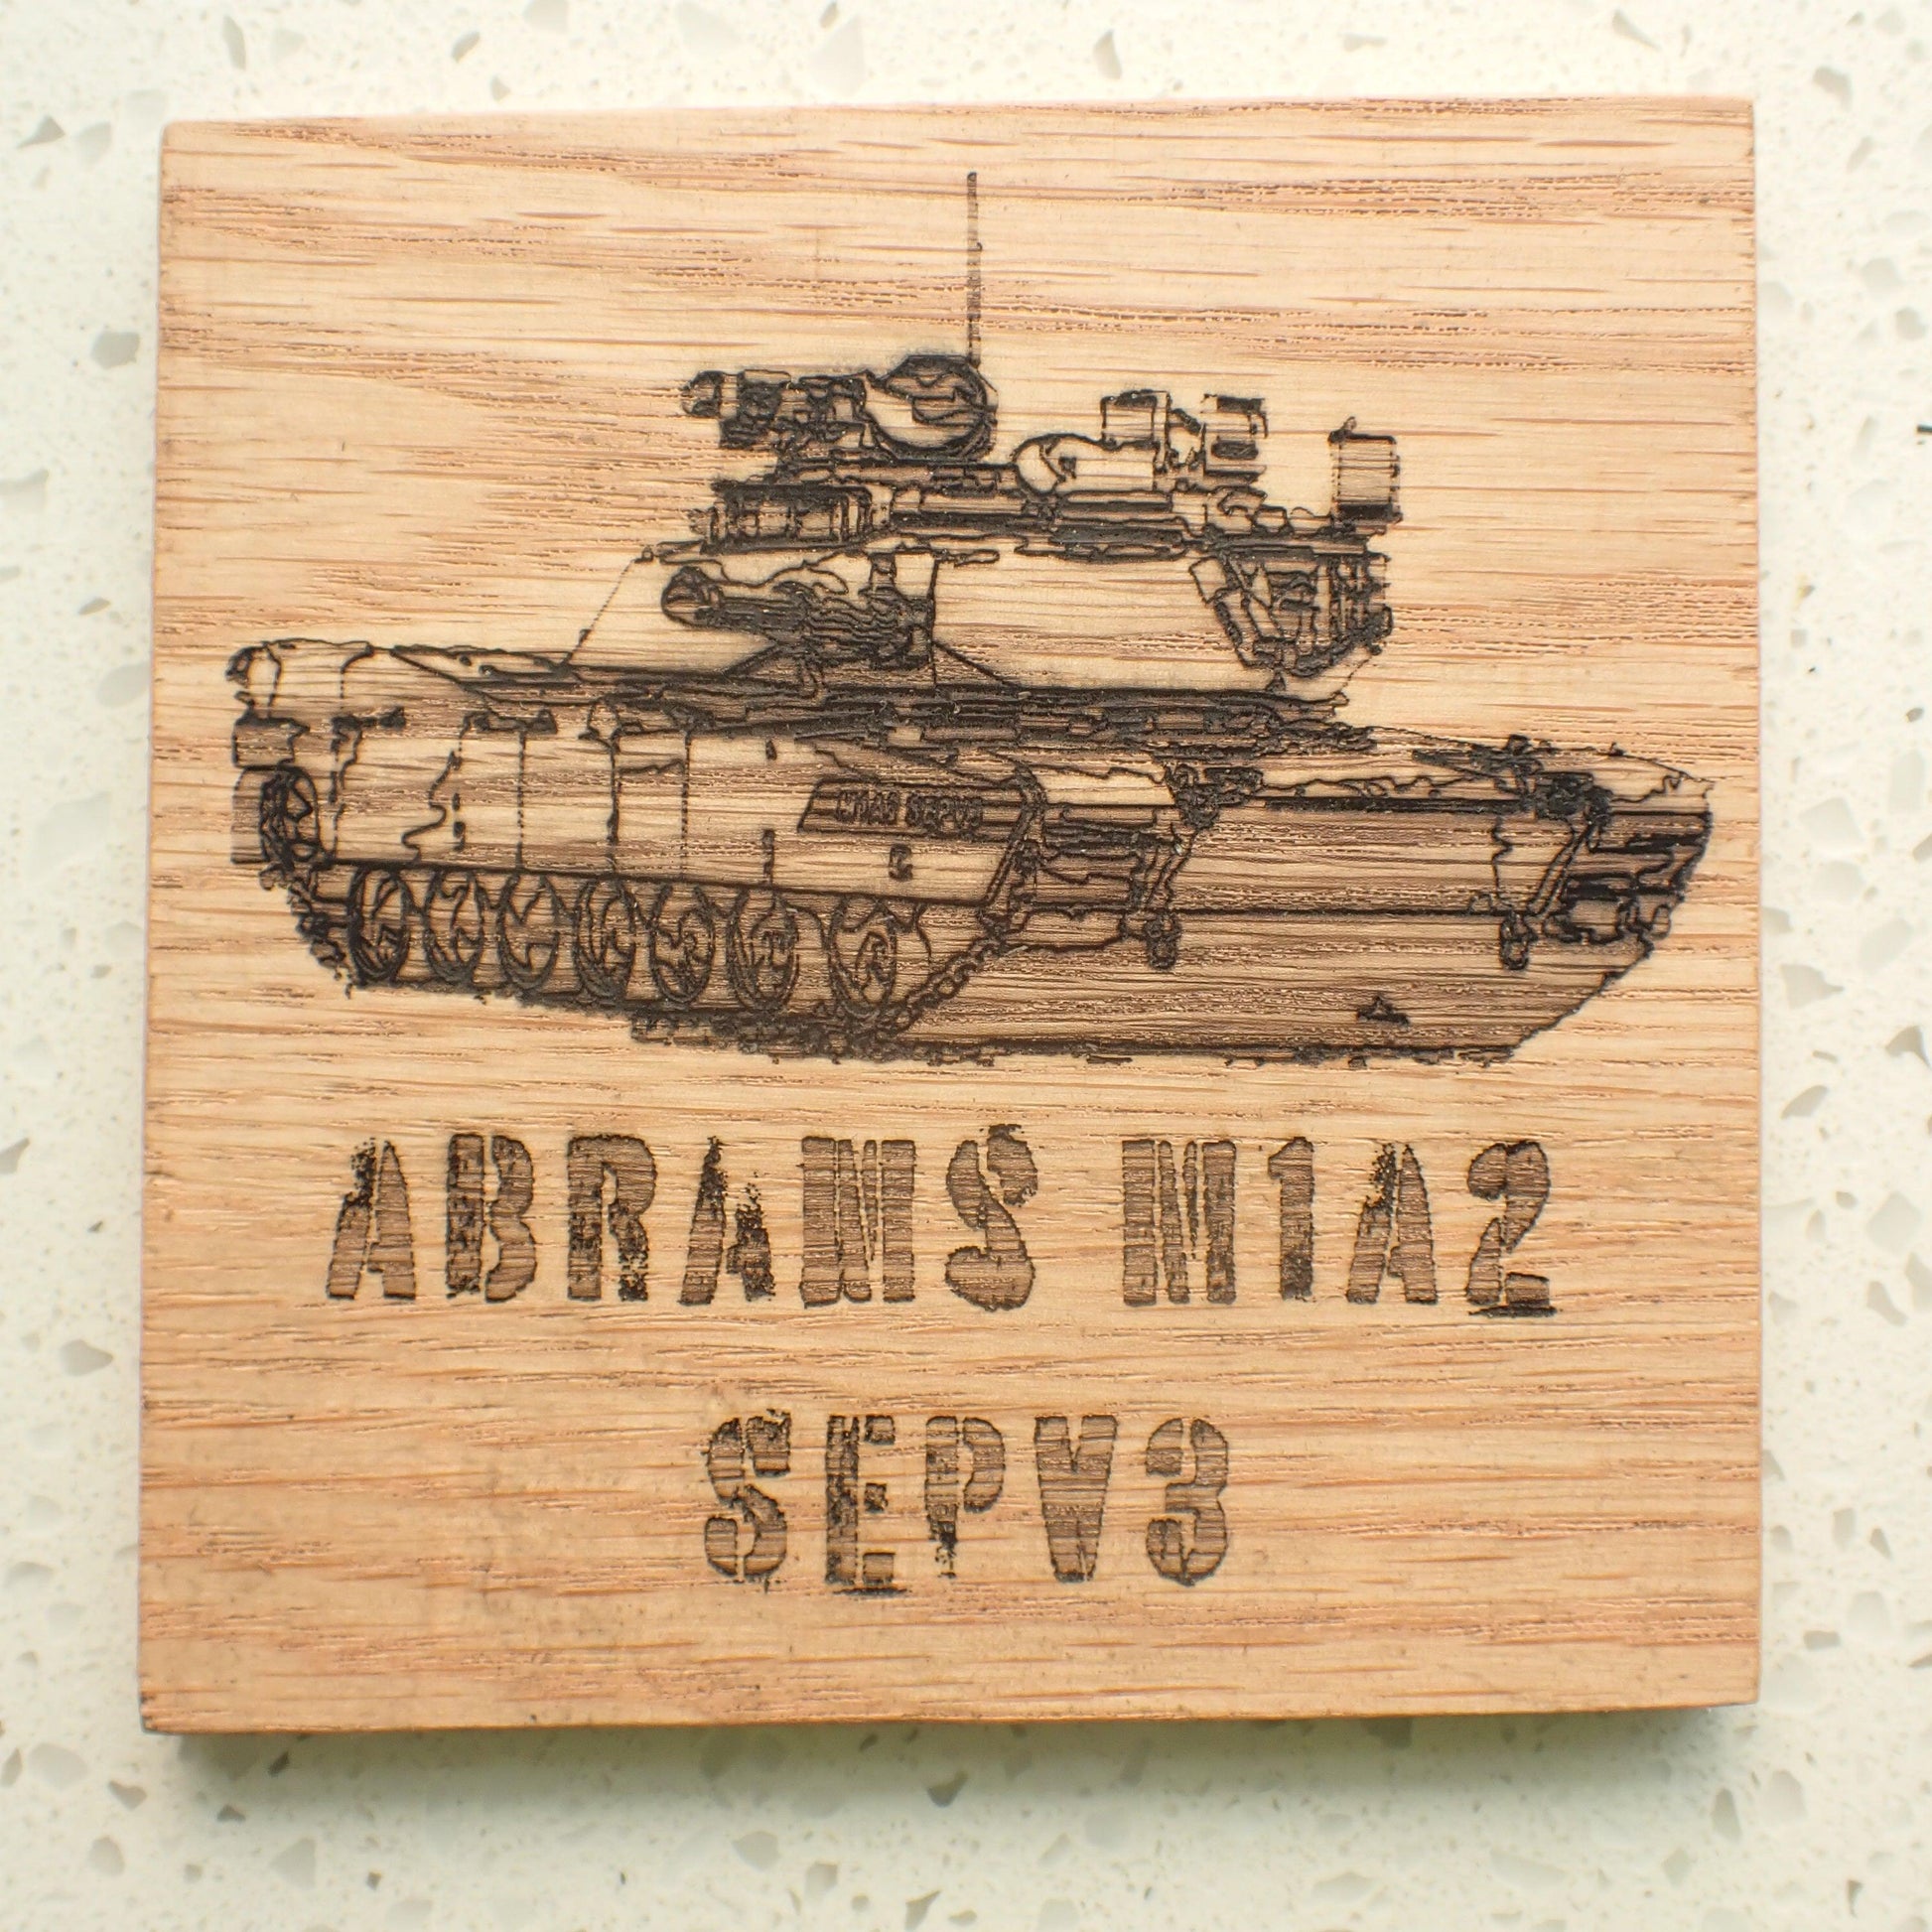 100mm x 100mm Red Oak Coaster - Type M1 Abrams - Burning Man Designs